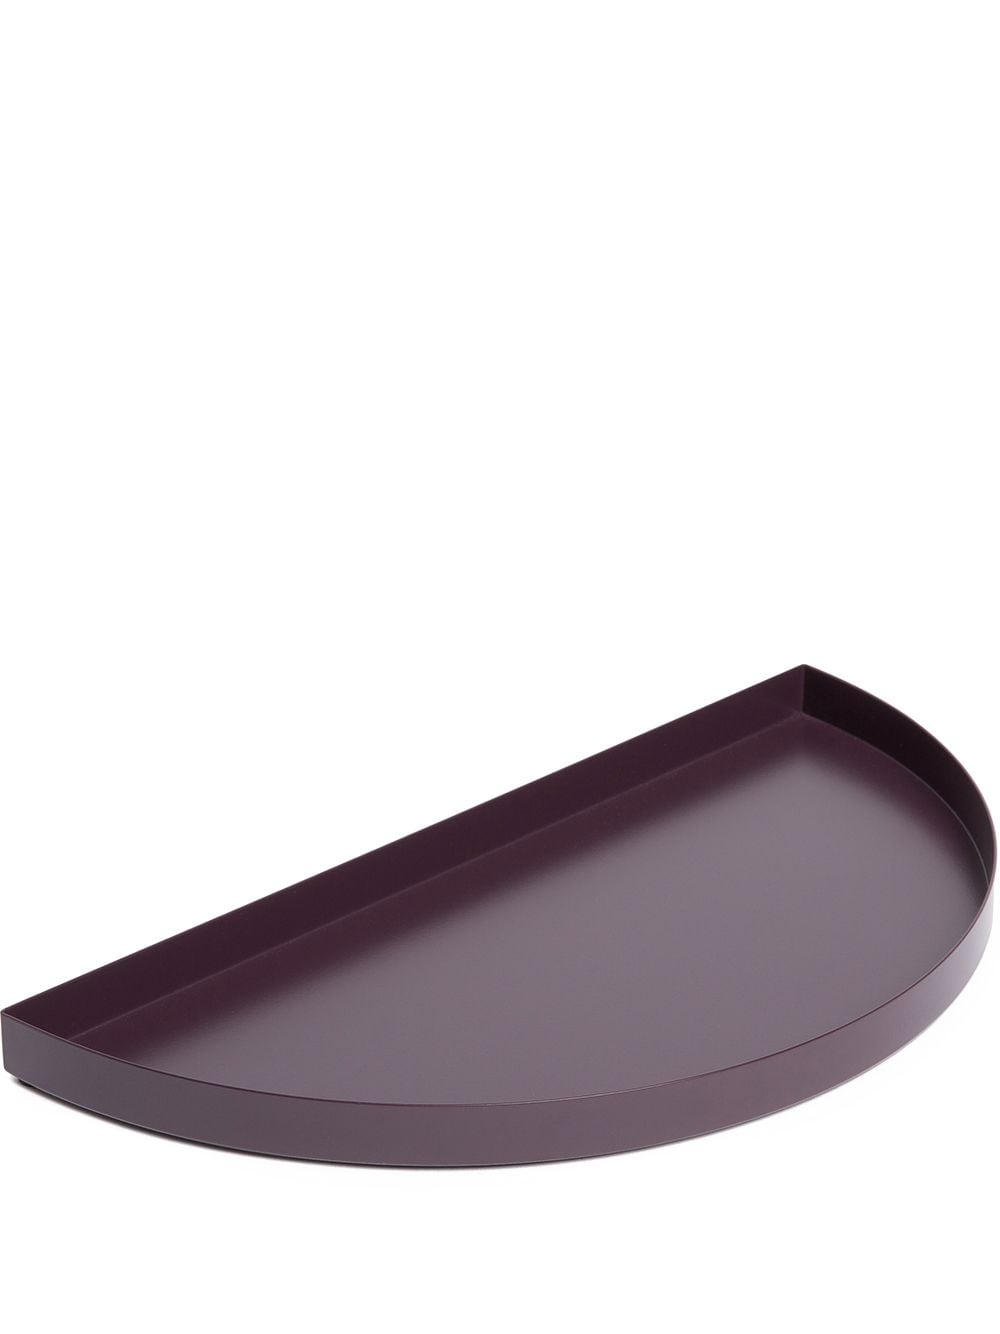 AYTM Unity tray (33cm) - Purple von AYTM